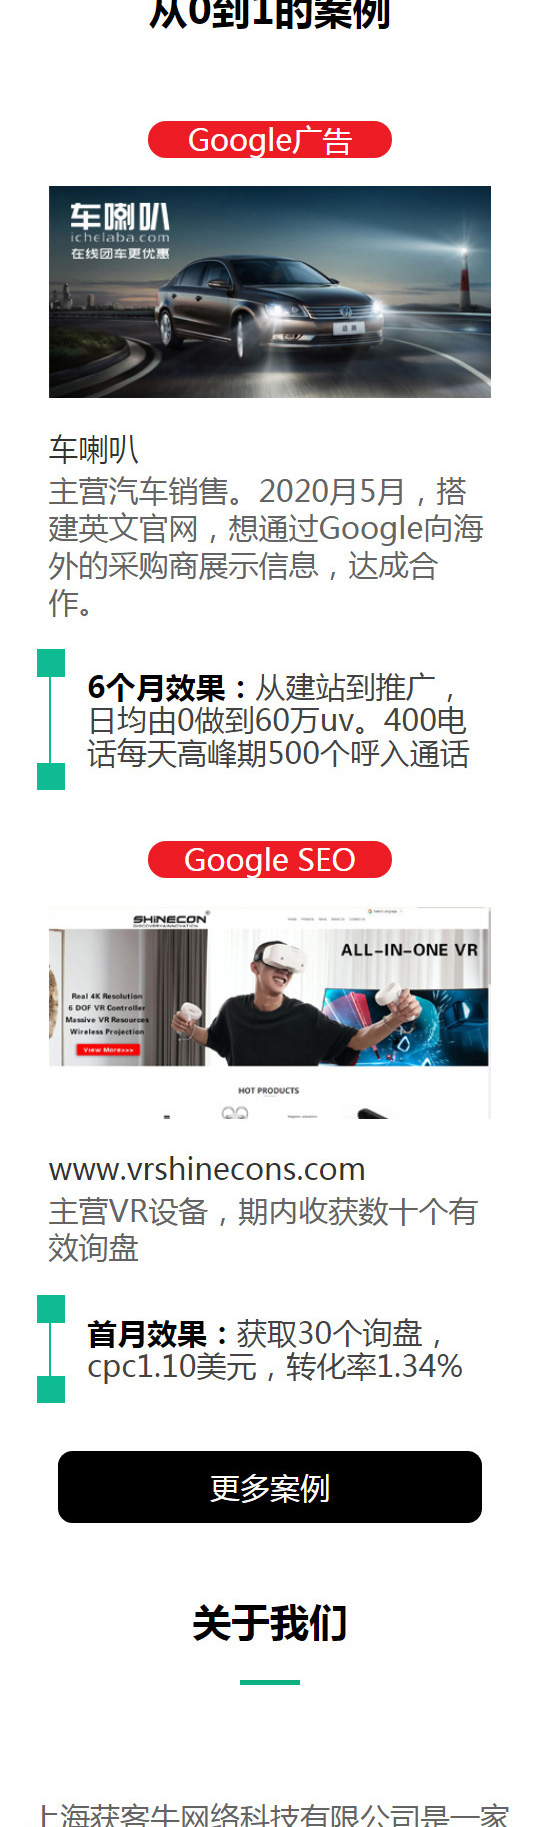 宁波企业谷歌seo外包行业专家在线为您服务(2022.11.24已更新)